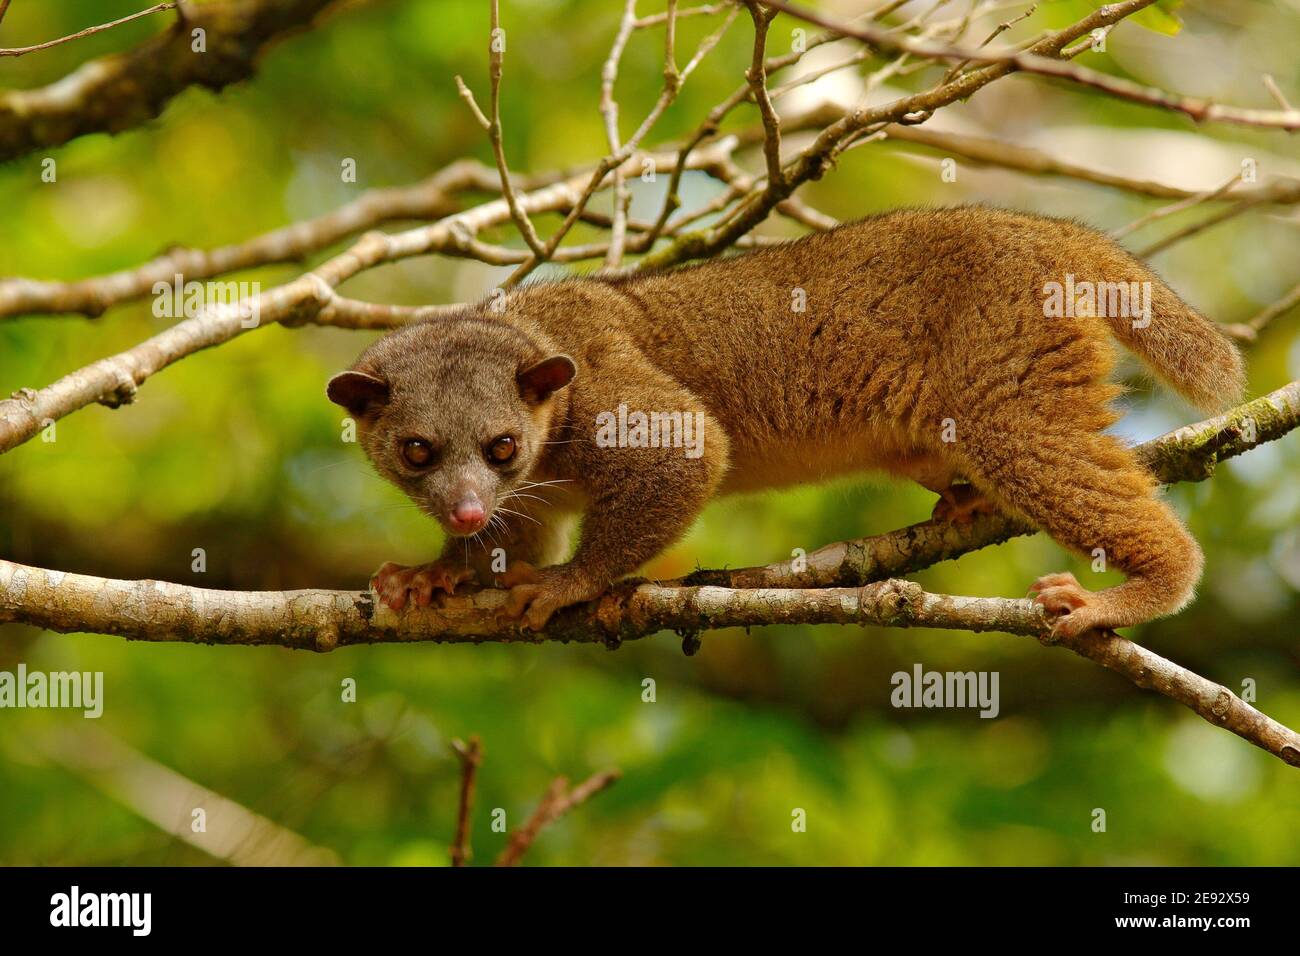 Kinkajou, Potos flavus, tropisches Tier in der Natur Wald Lebensraum. Säugetier aus Costa Rica. Wildlife-Szene aus der Natur. Wild Kinkajou auf dem Baum. Stockfoto